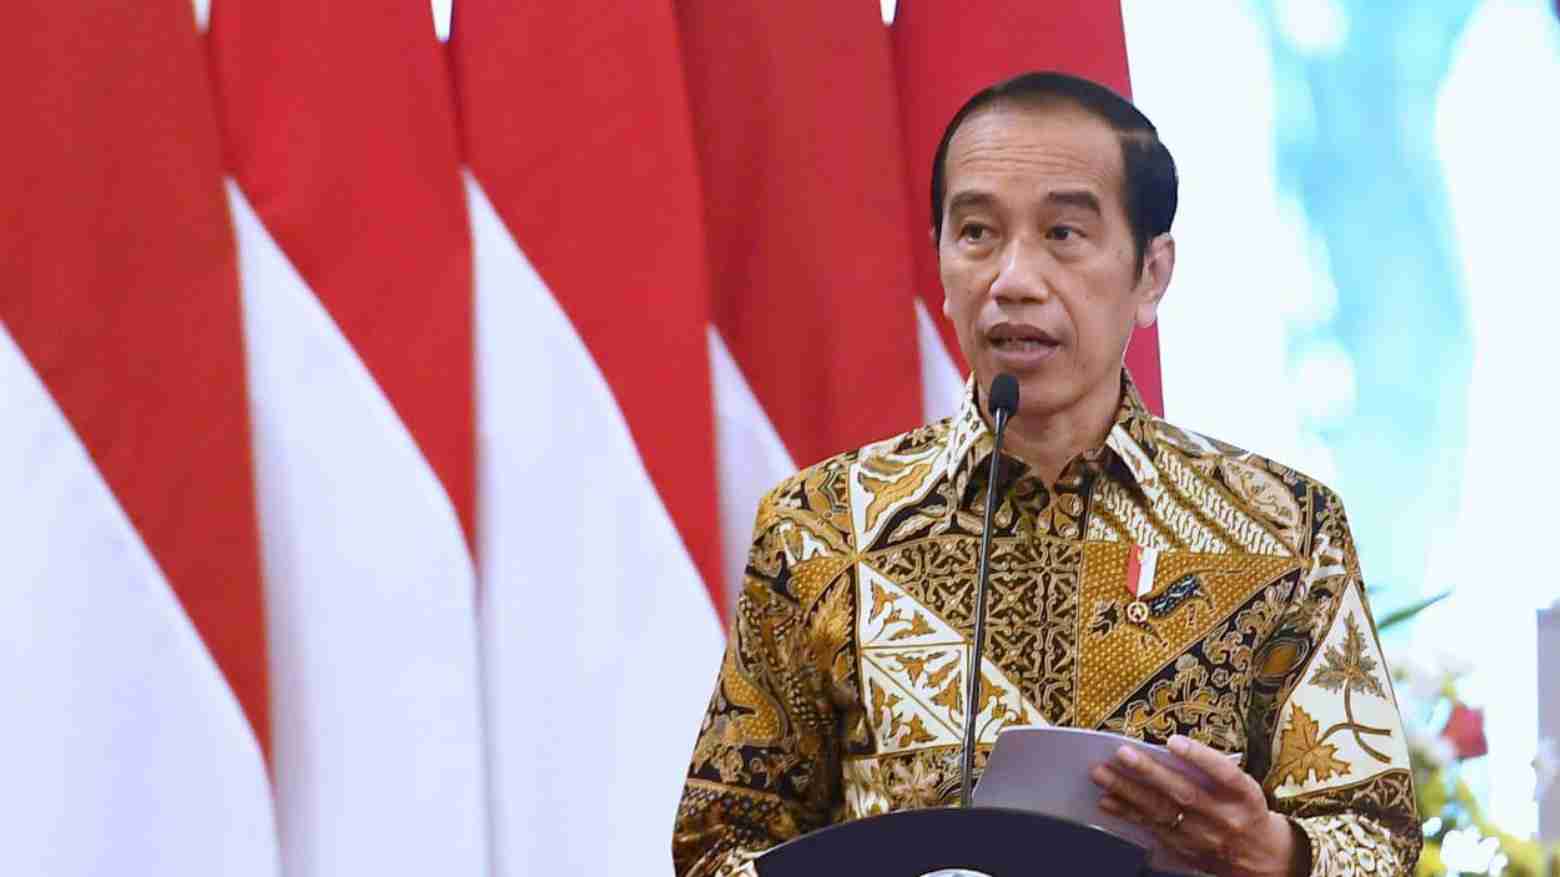 May Day 2021 Trending di Twitter, Jokowi: Buruh Adalah Aset Besar Bangsa